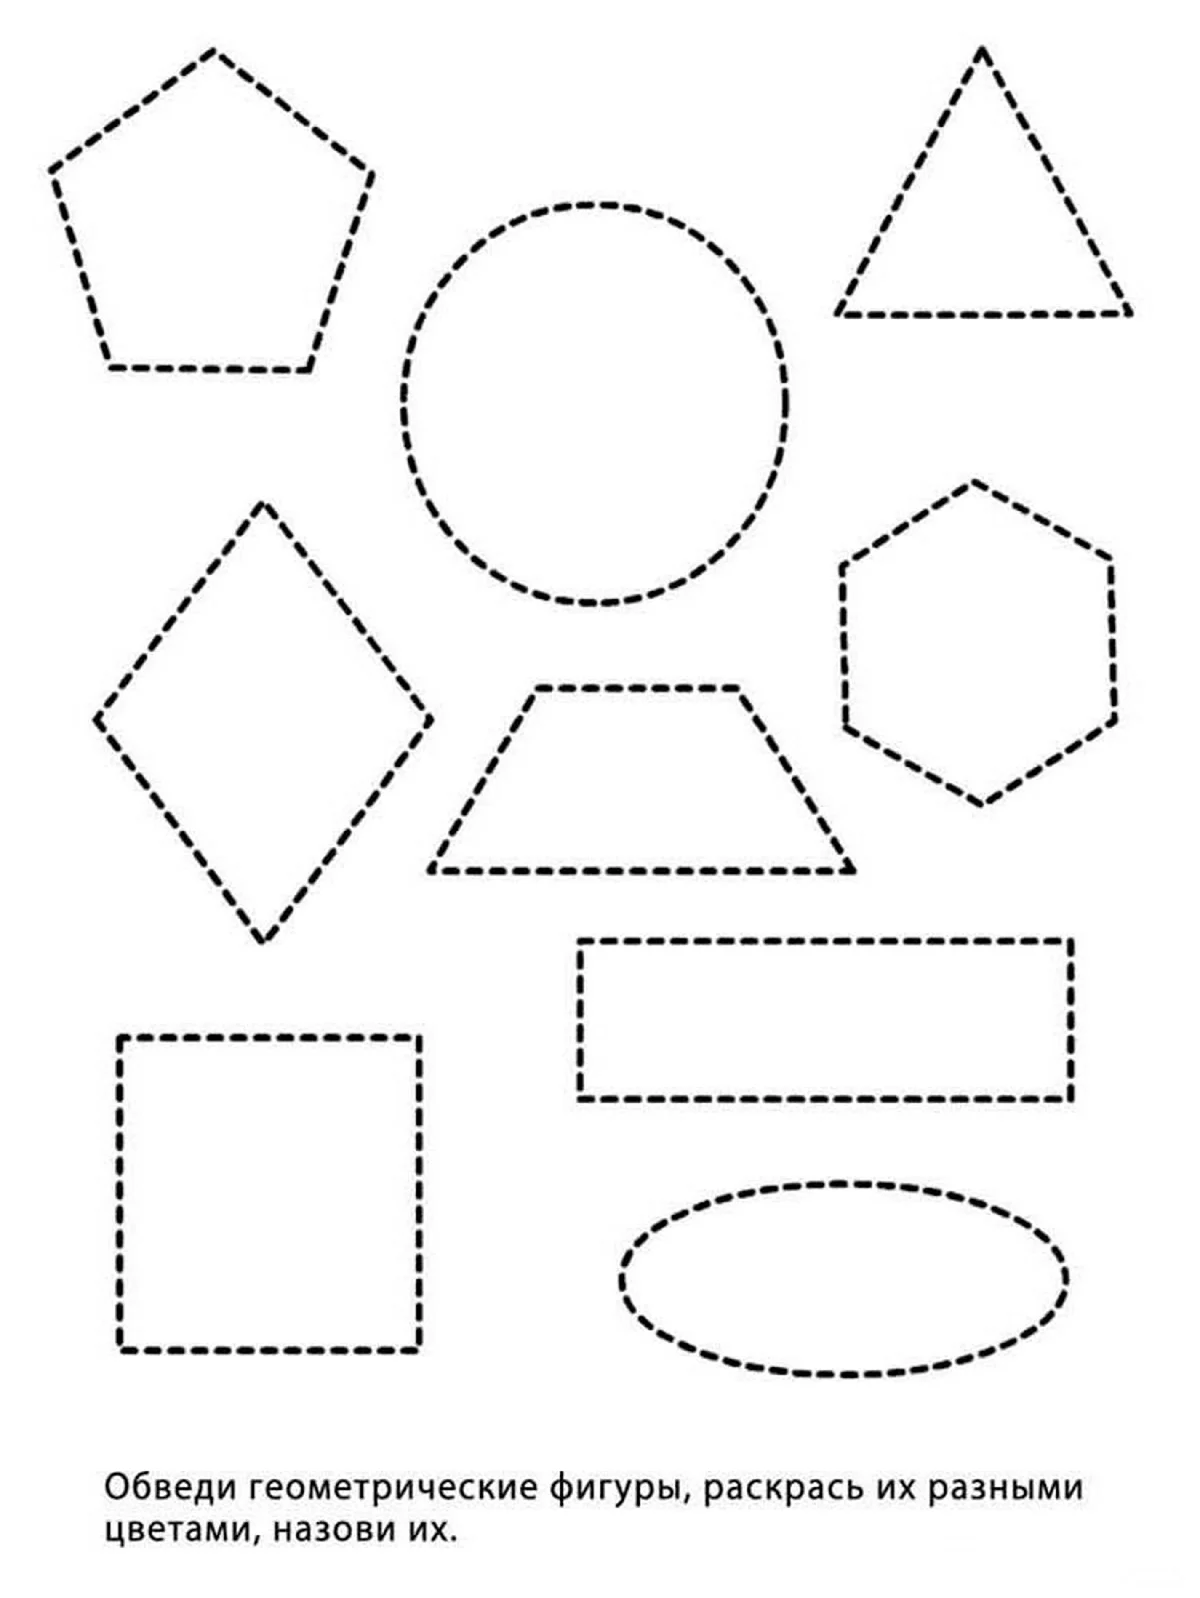 Обведи геометрические фигуры для детей 4-5 лет. Своими руками